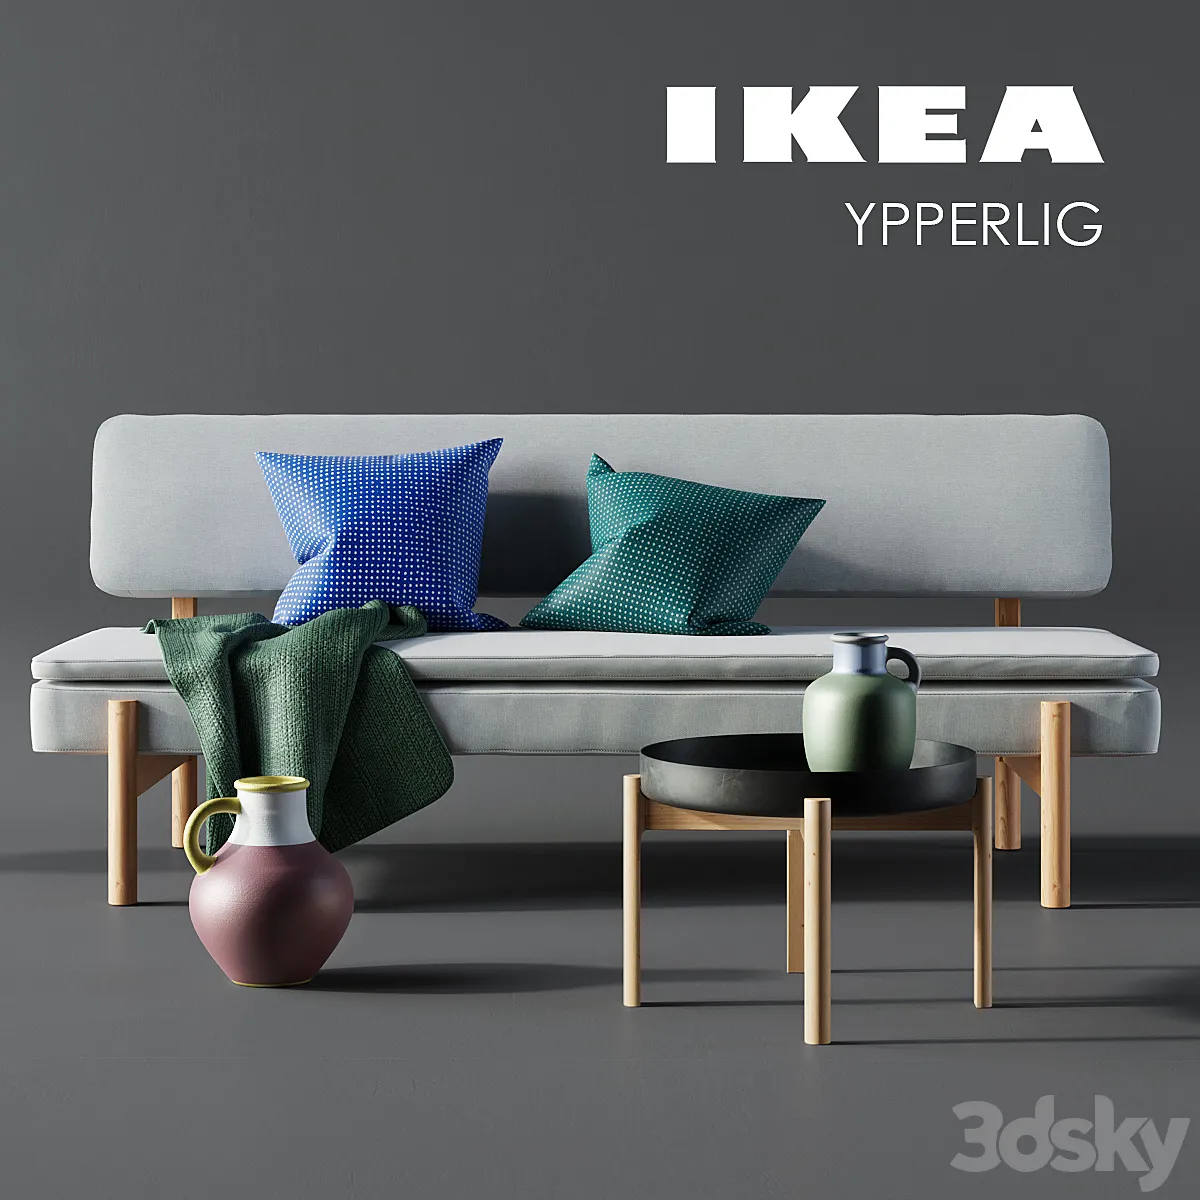 دانلود 3dsky – IKEA – YPPERLIG (corona)